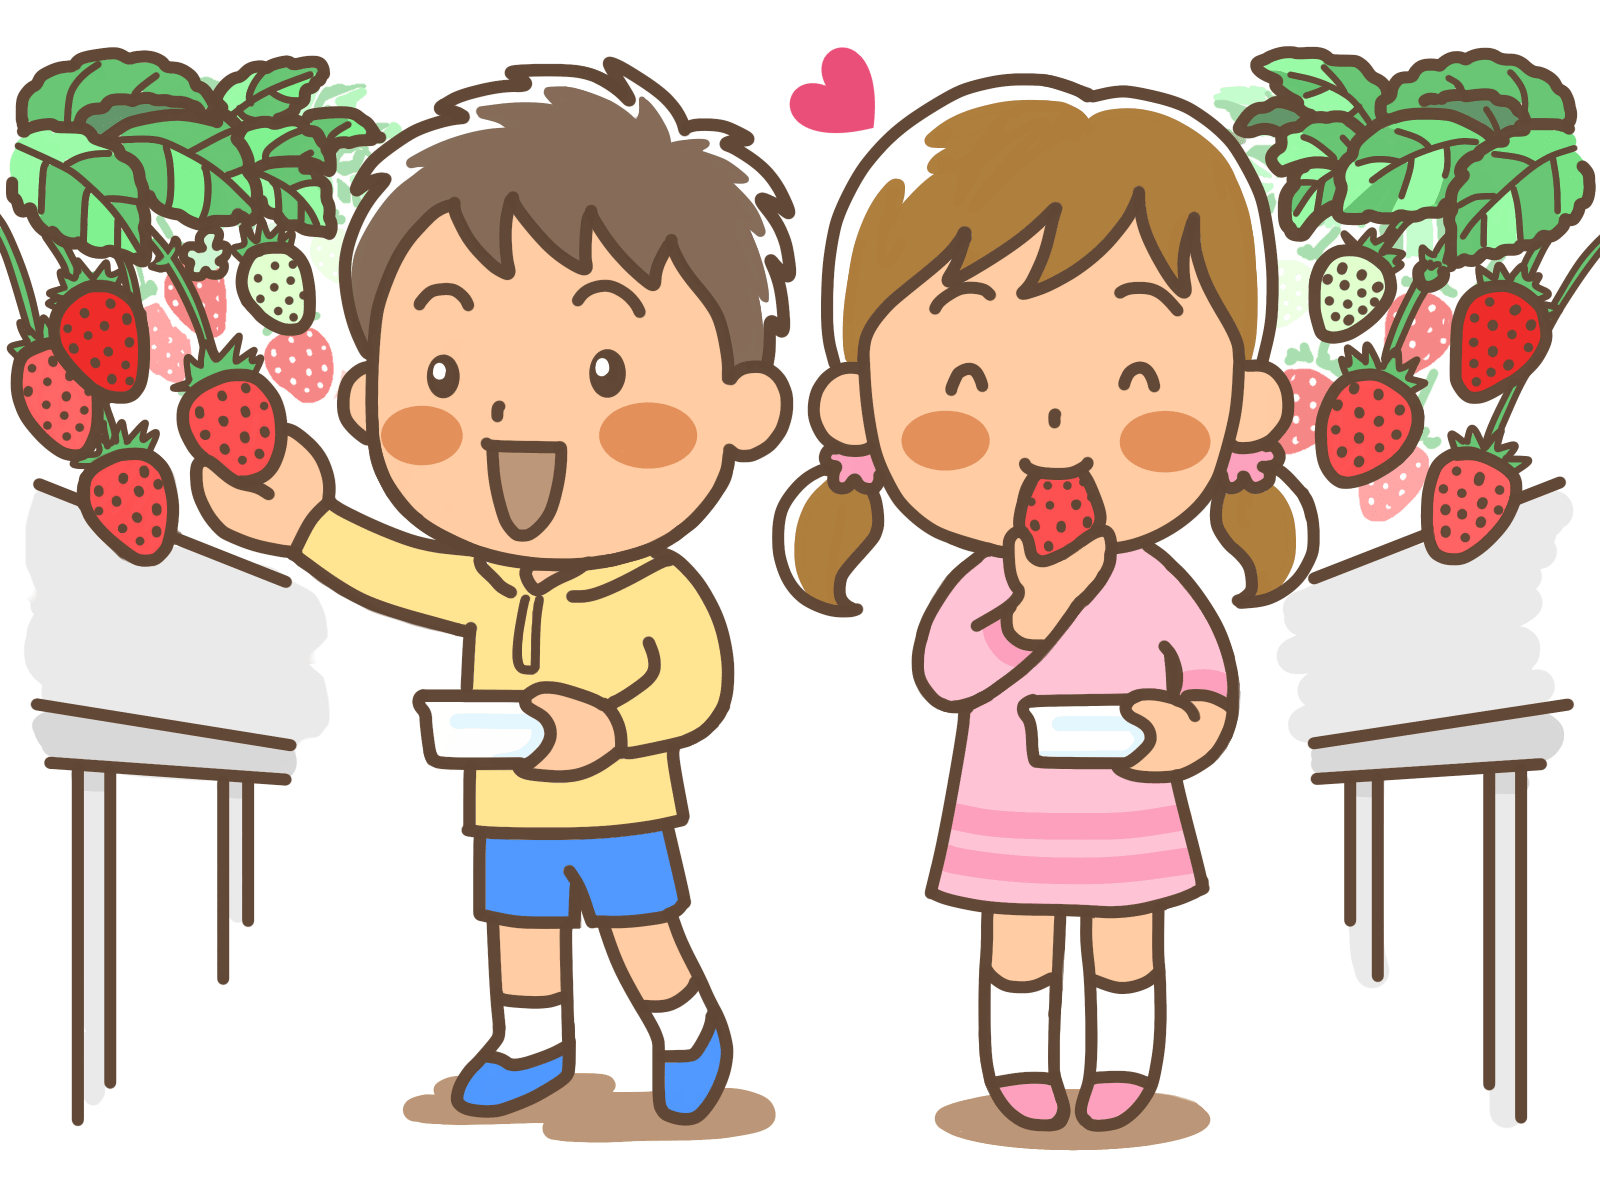 ちょこっと工夫するだけで 子どもの興味関心は高まります 神戸 すき きらいとサヨナラできる食育教室 みえハウス